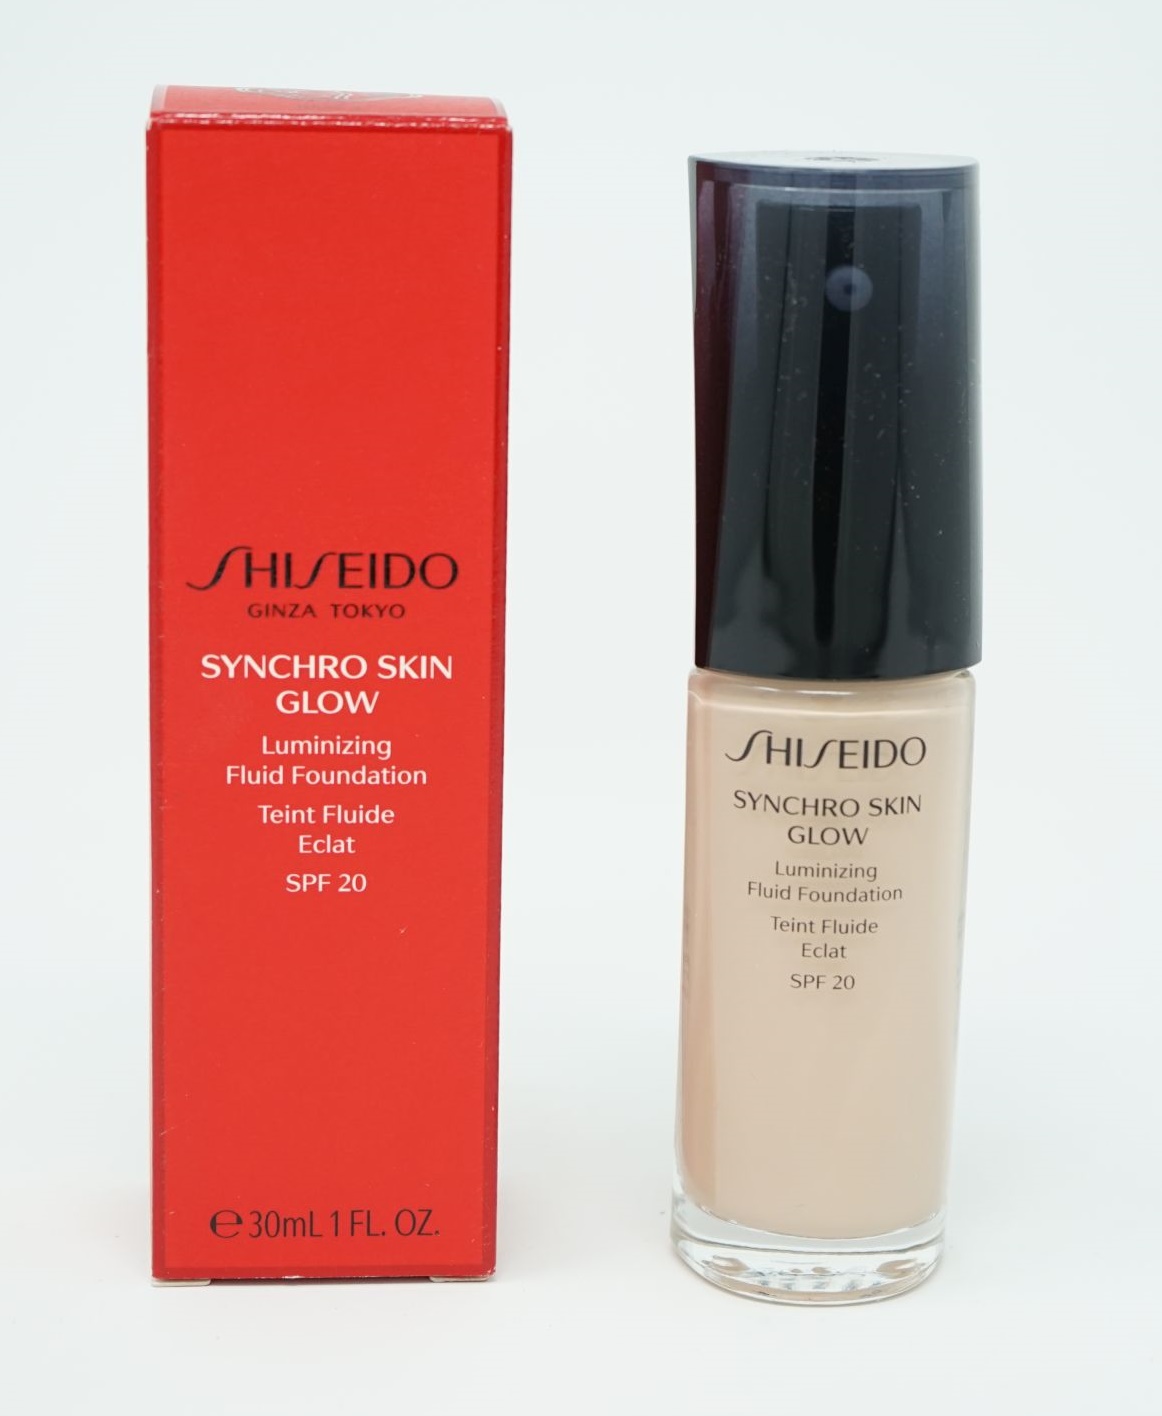 Shiseido Ginza Tokyo Sychro Skin Lasting Foundation SPF20  Rose 2